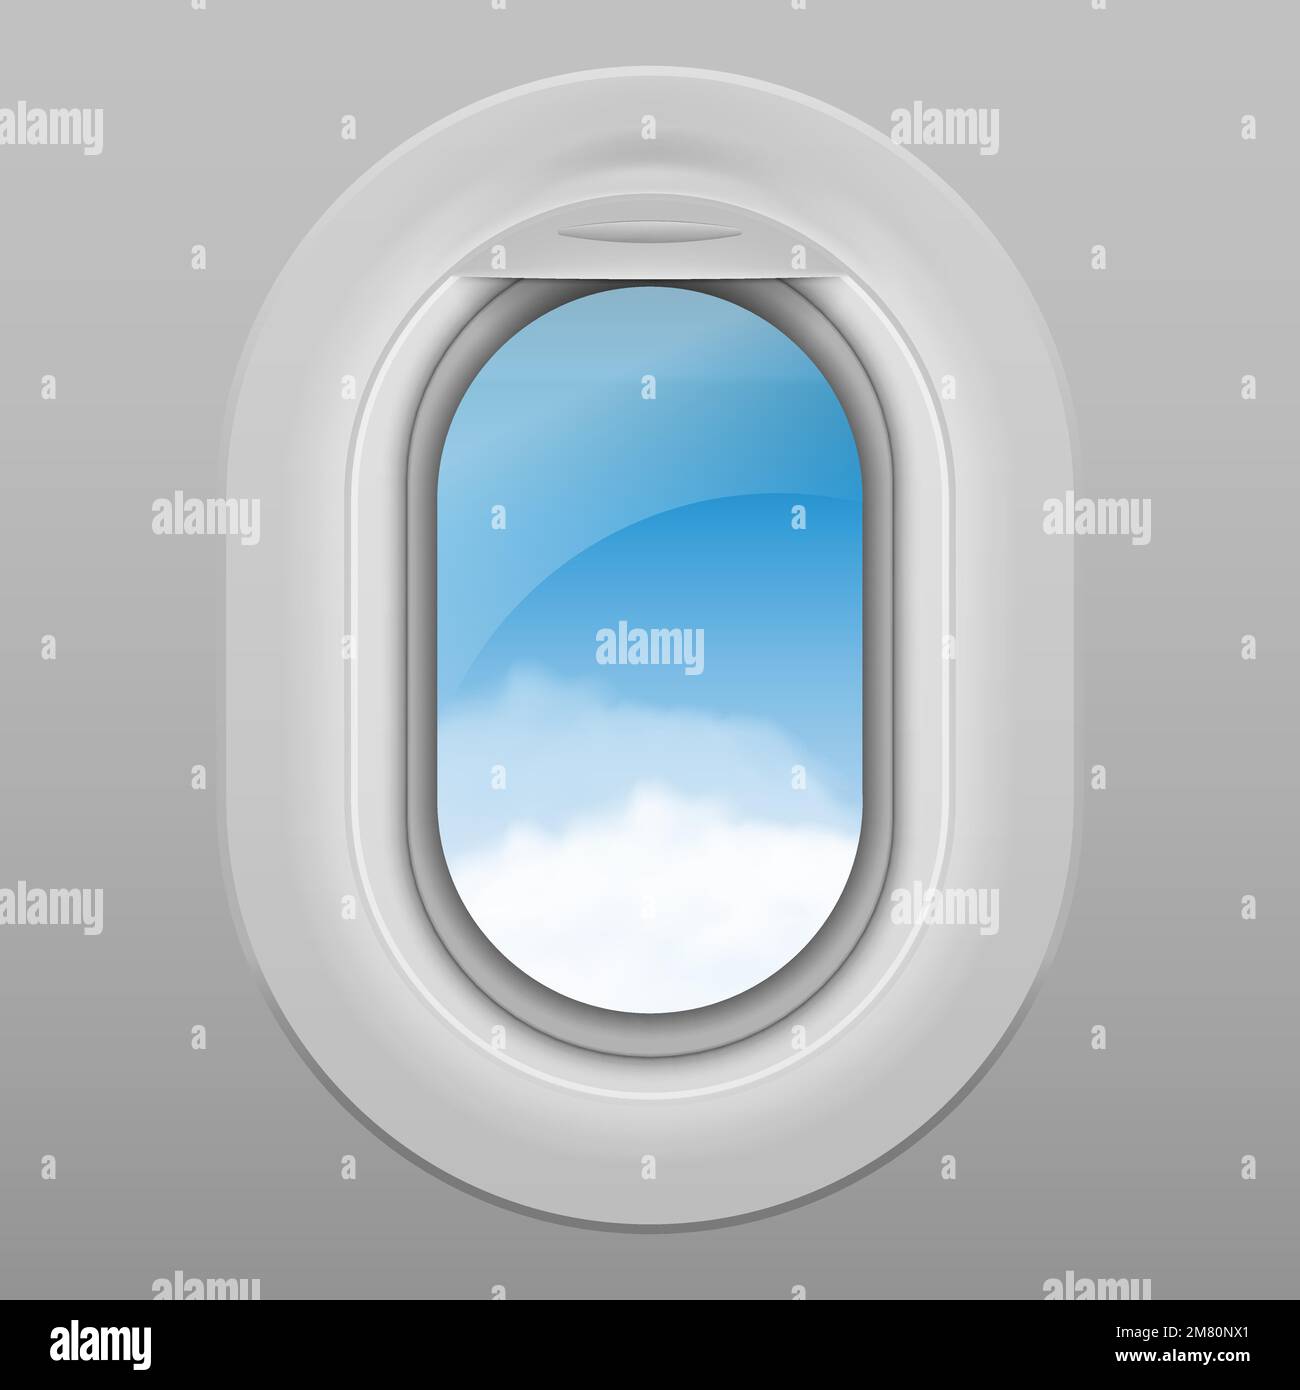 Fenêtre réaliste de l'avion. Ciel avec des nuages blancs vus de l'intérieur d'une fenêtre d'avion. Illustration vectorielle. SPE 10. Illustration de Vecteur